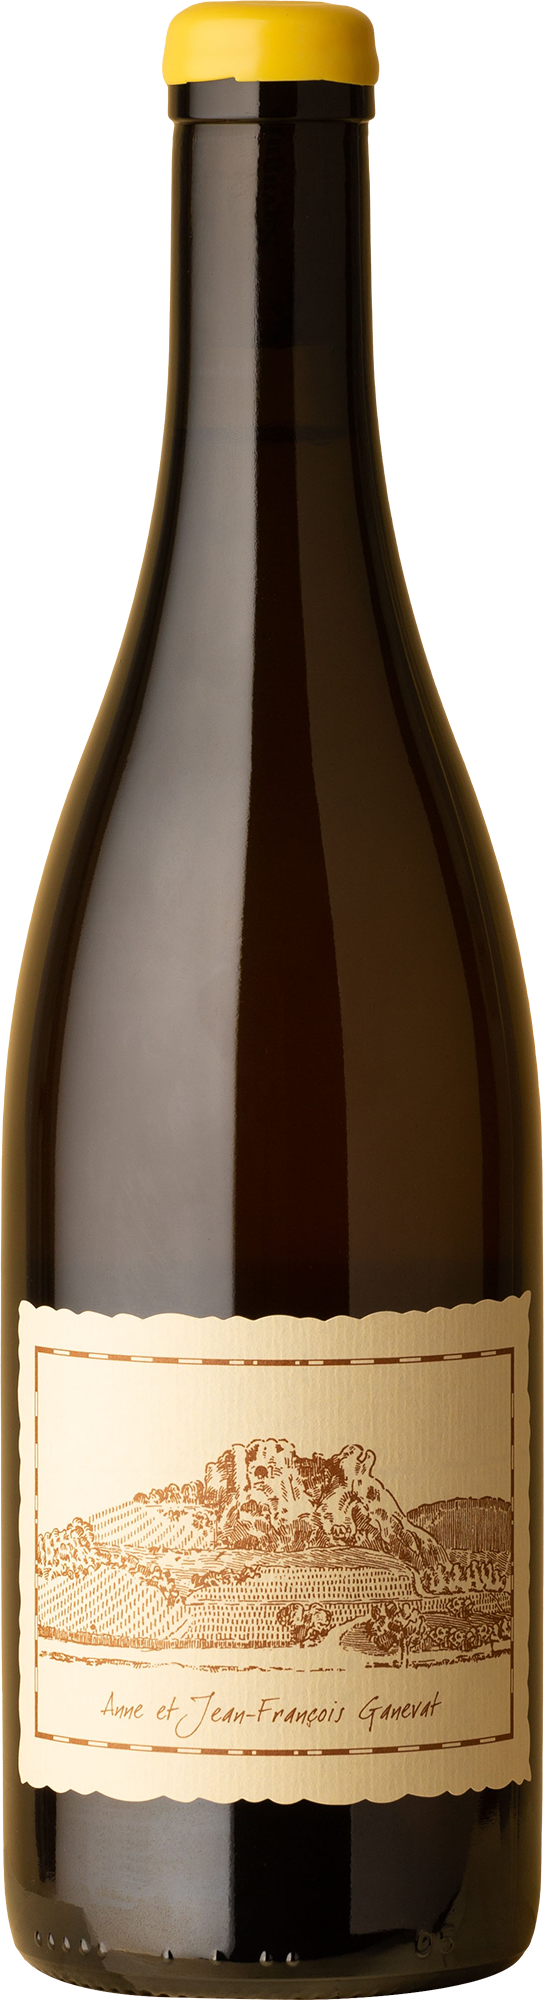 Anne & Jean-François Ganevat - Cotes du Jura La Barraque Savagnin 2018 White Wine